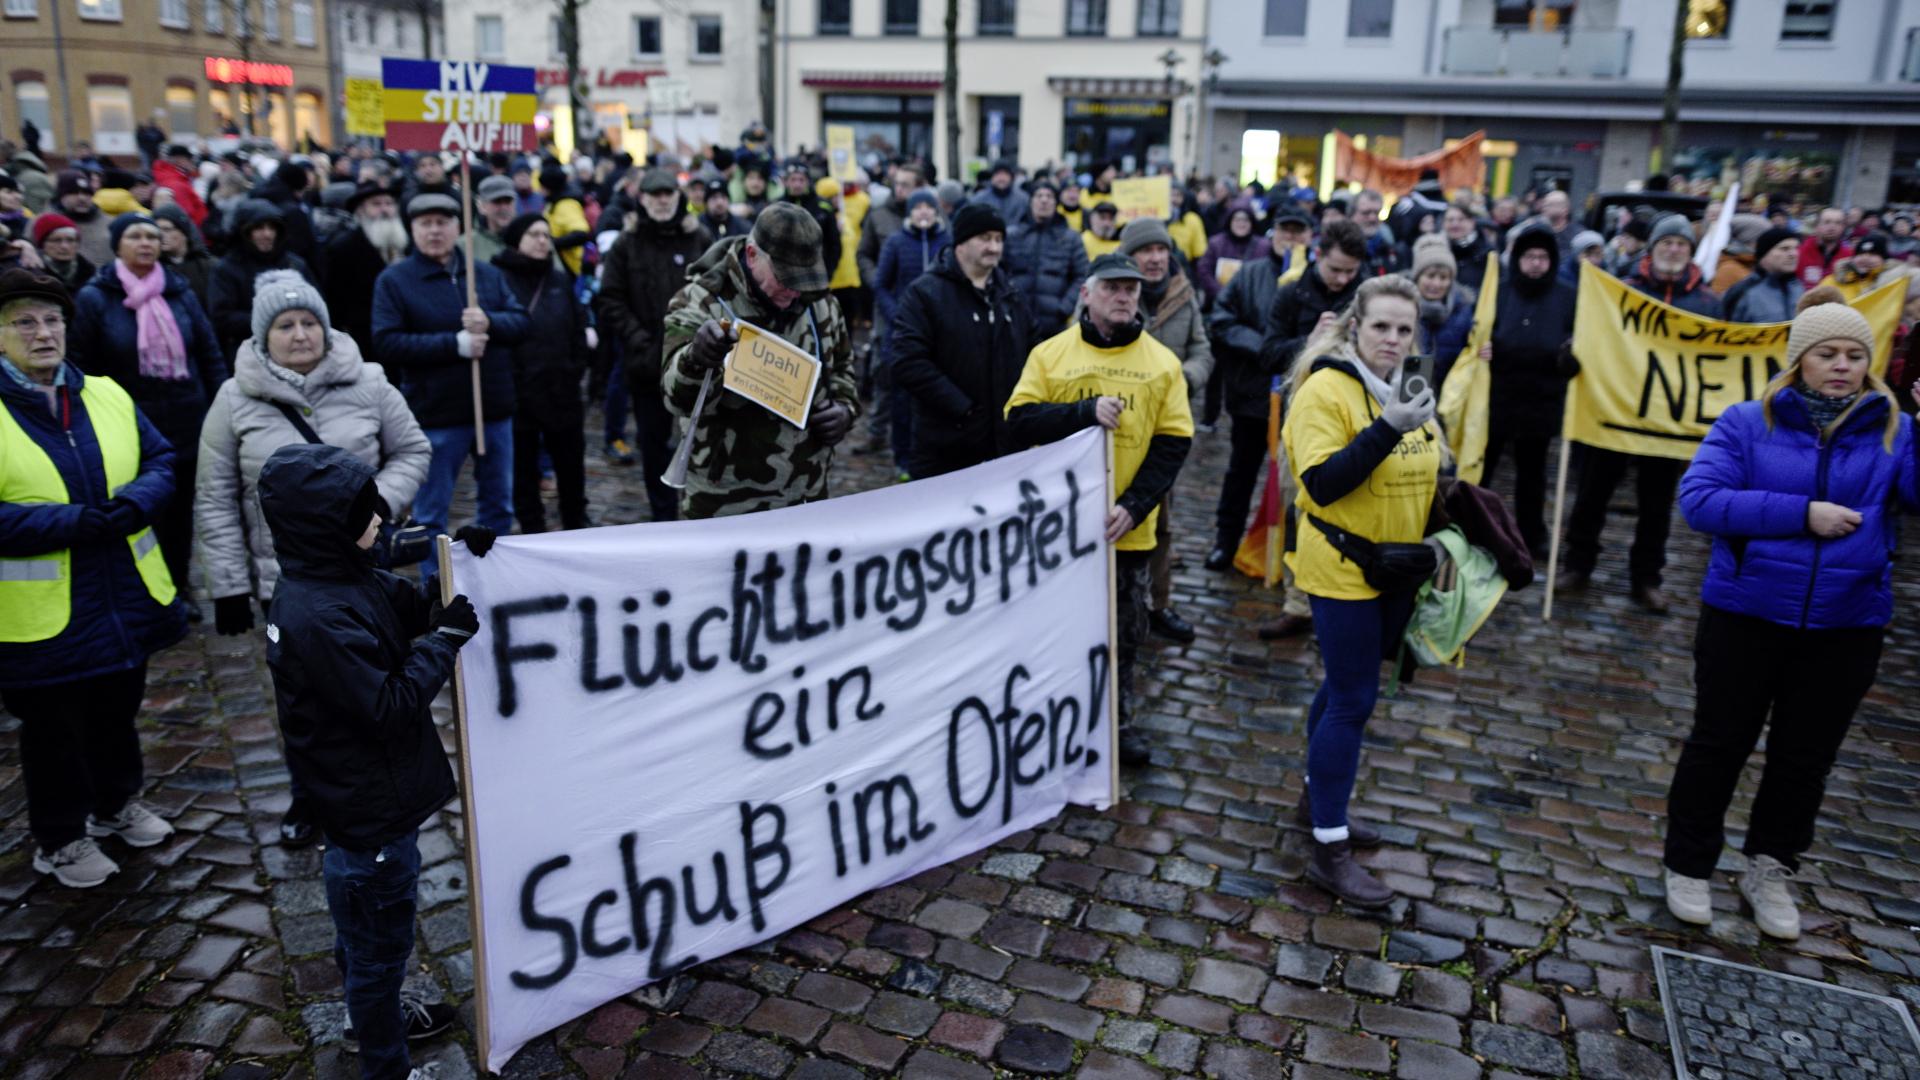 Menschen demonstrieren mit einem Banner mit der Aufschrift "Flüchtlingsgipfel - ein Schuss im Ofen" gegen eine geplante Flüchtlingsunterkunft in Nordwestmecklenburg. | dpa